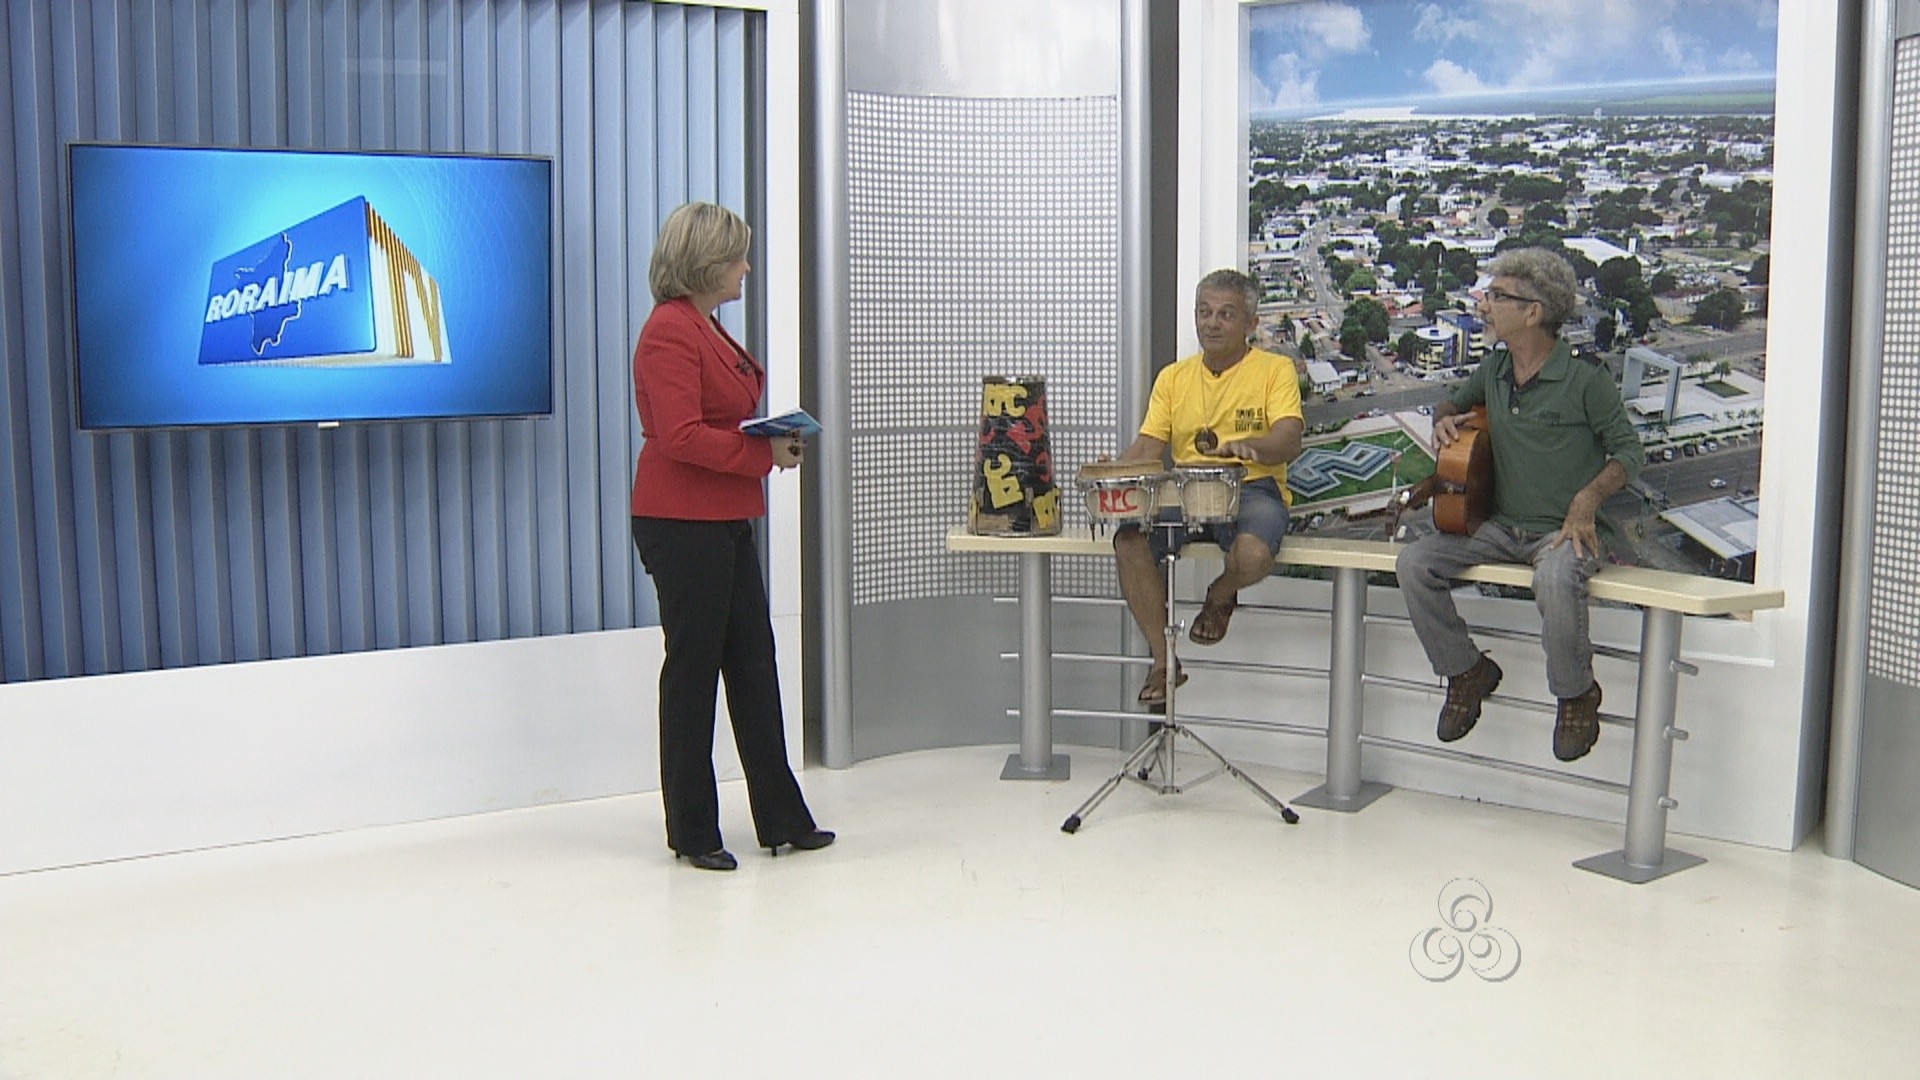 Final de semana em Boa Vista terá muita música (Foto: Roraima TV)